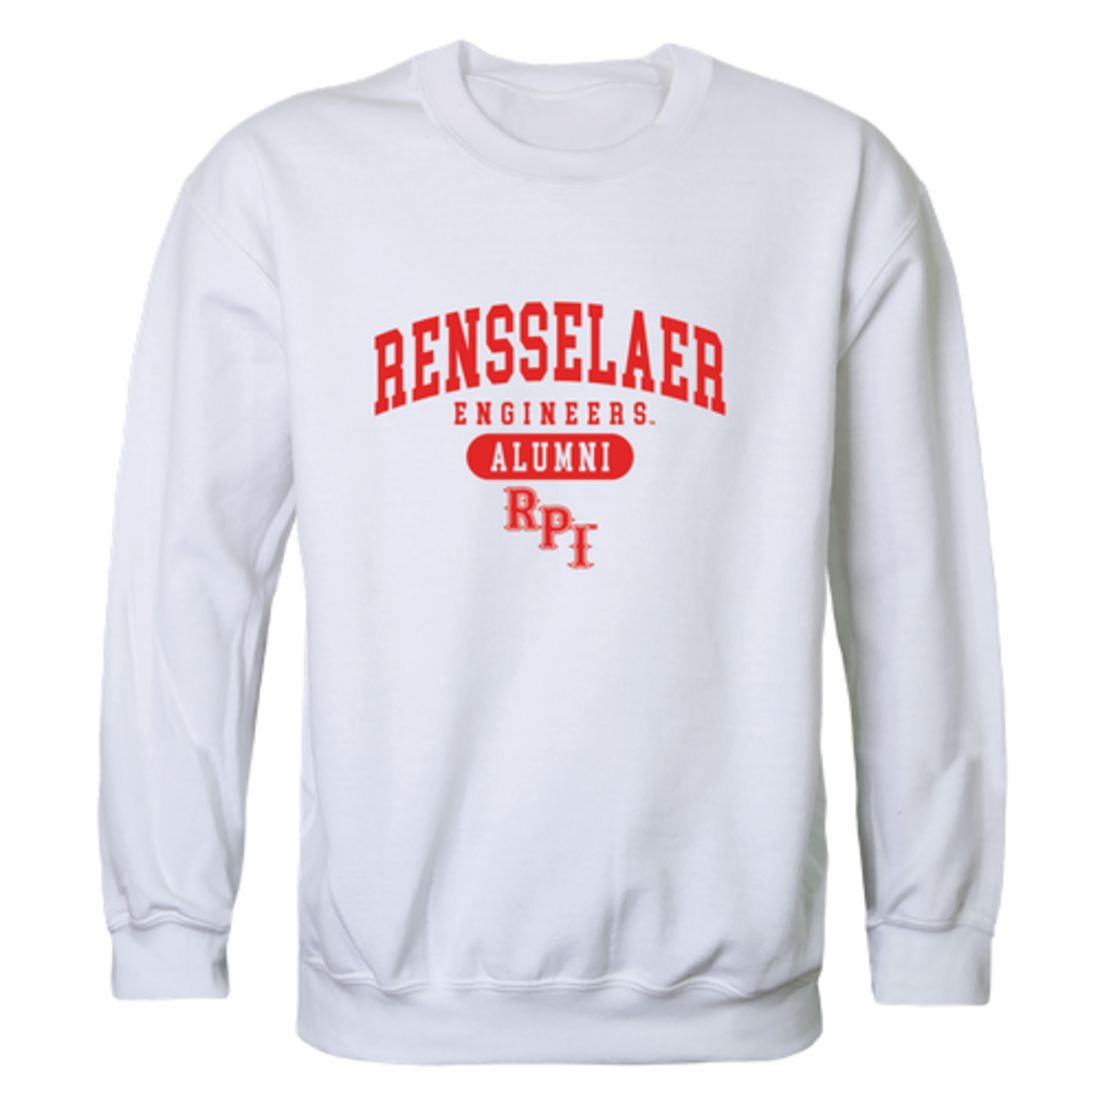 RPI Rensselaer Polytechnic Institute Engineers Alumni Fleece Crewneck Pullover Sweatshirt Heather Gray-Campus-Wardrobe